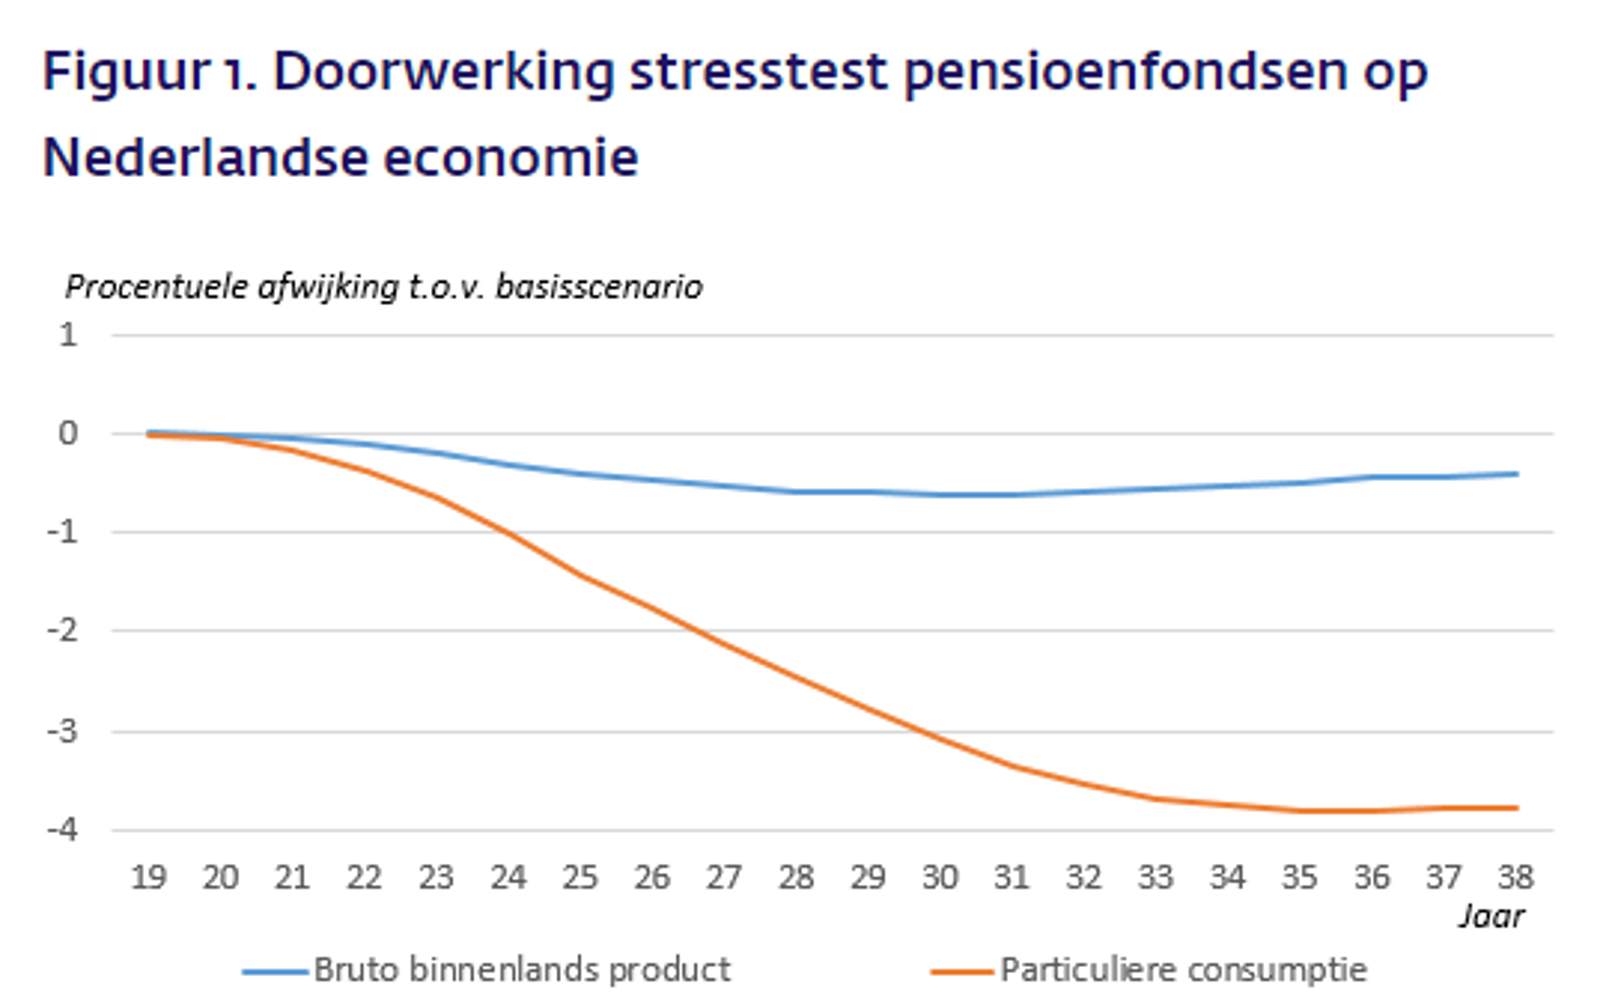 Doorwerking stresstest pensioenfondsen op Nederlandse economie